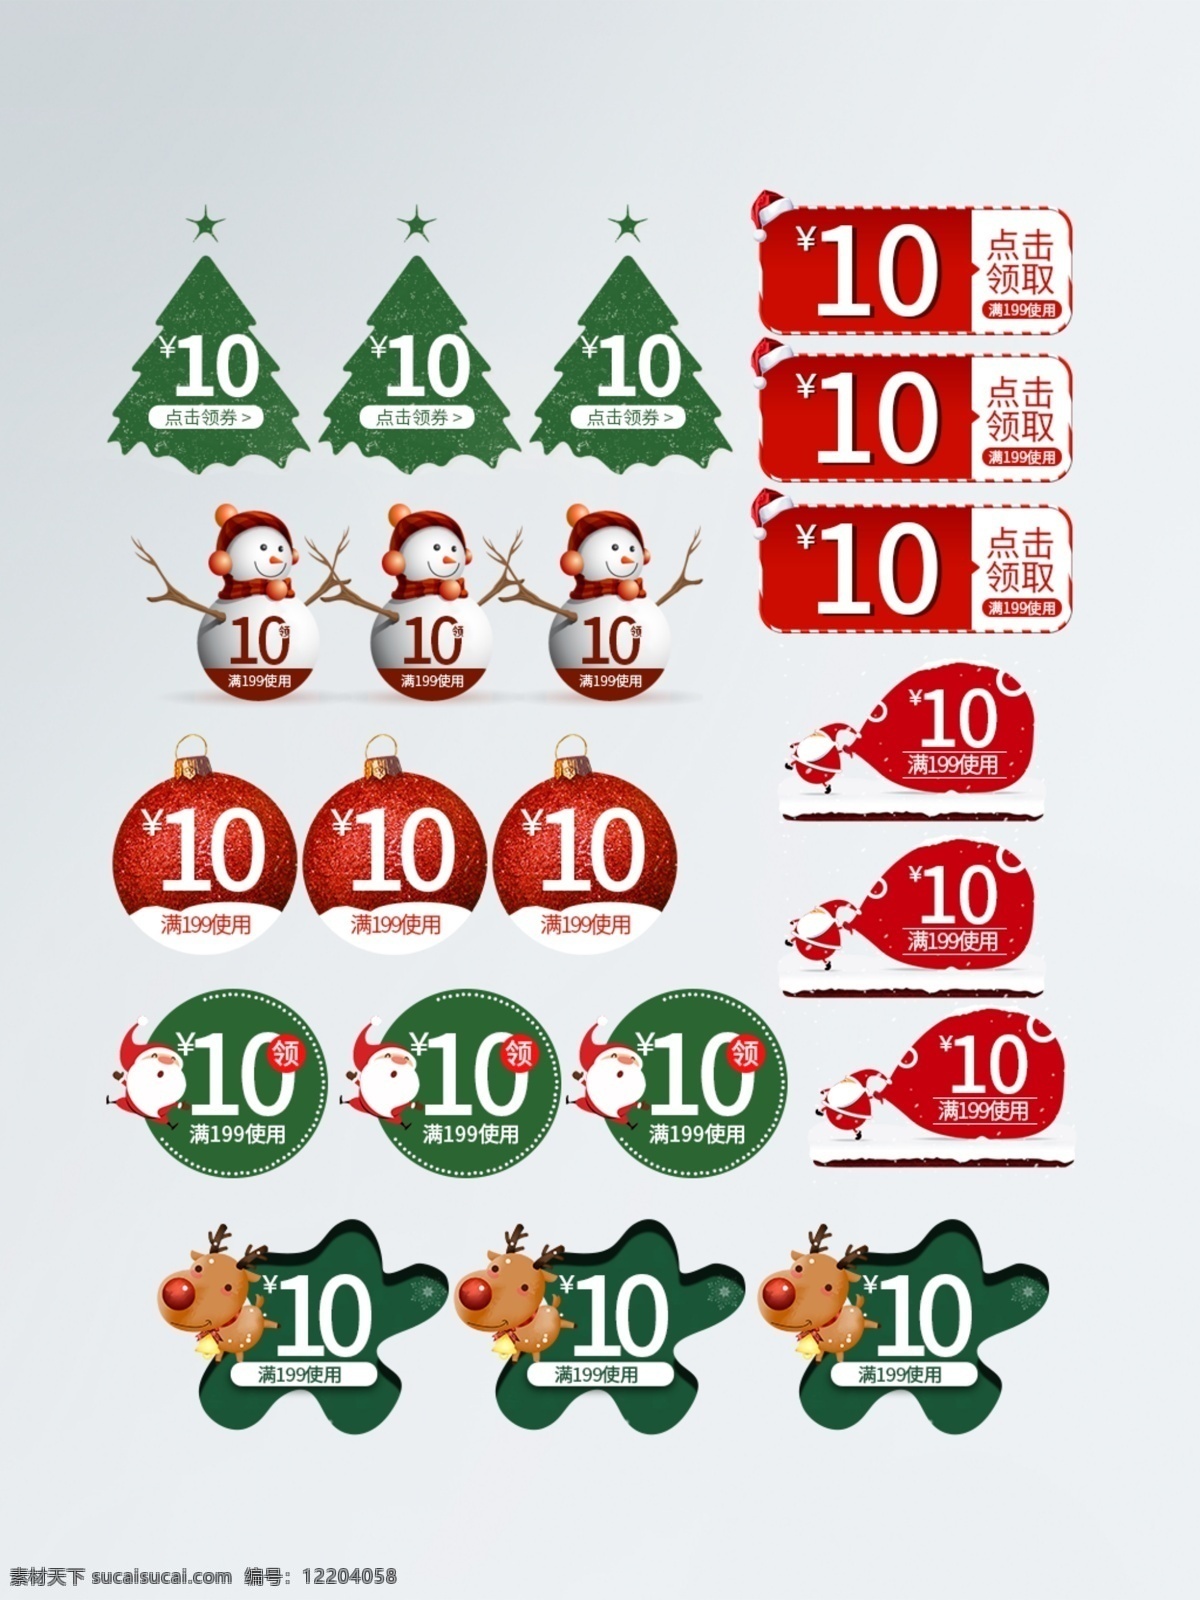 超级 可爱 圣诞老人 雪人 圣诞树 标签 优惠券 模版 促销标签 促销价格 价格标签 圣诞节 红色优惠券 绿色优惠券 圣诞节优惠券 优惠小标签